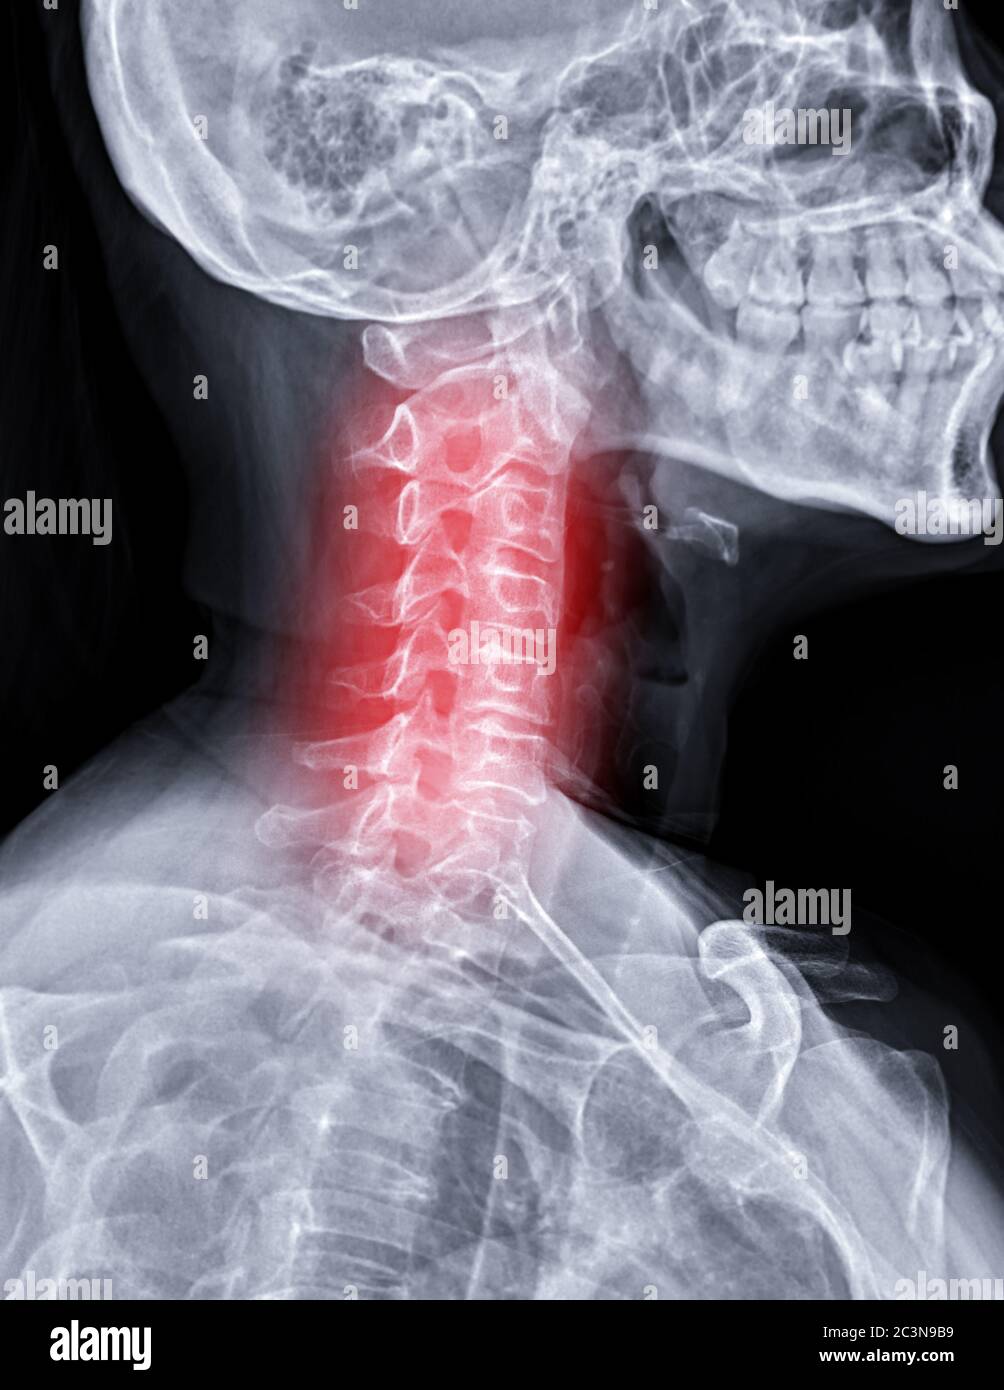 Immagine radiografica della colonna C o radiografica della vista obliqua della colonna cervicale per l'erniazione diagnostica intervertebrale del disco. Foto Stock